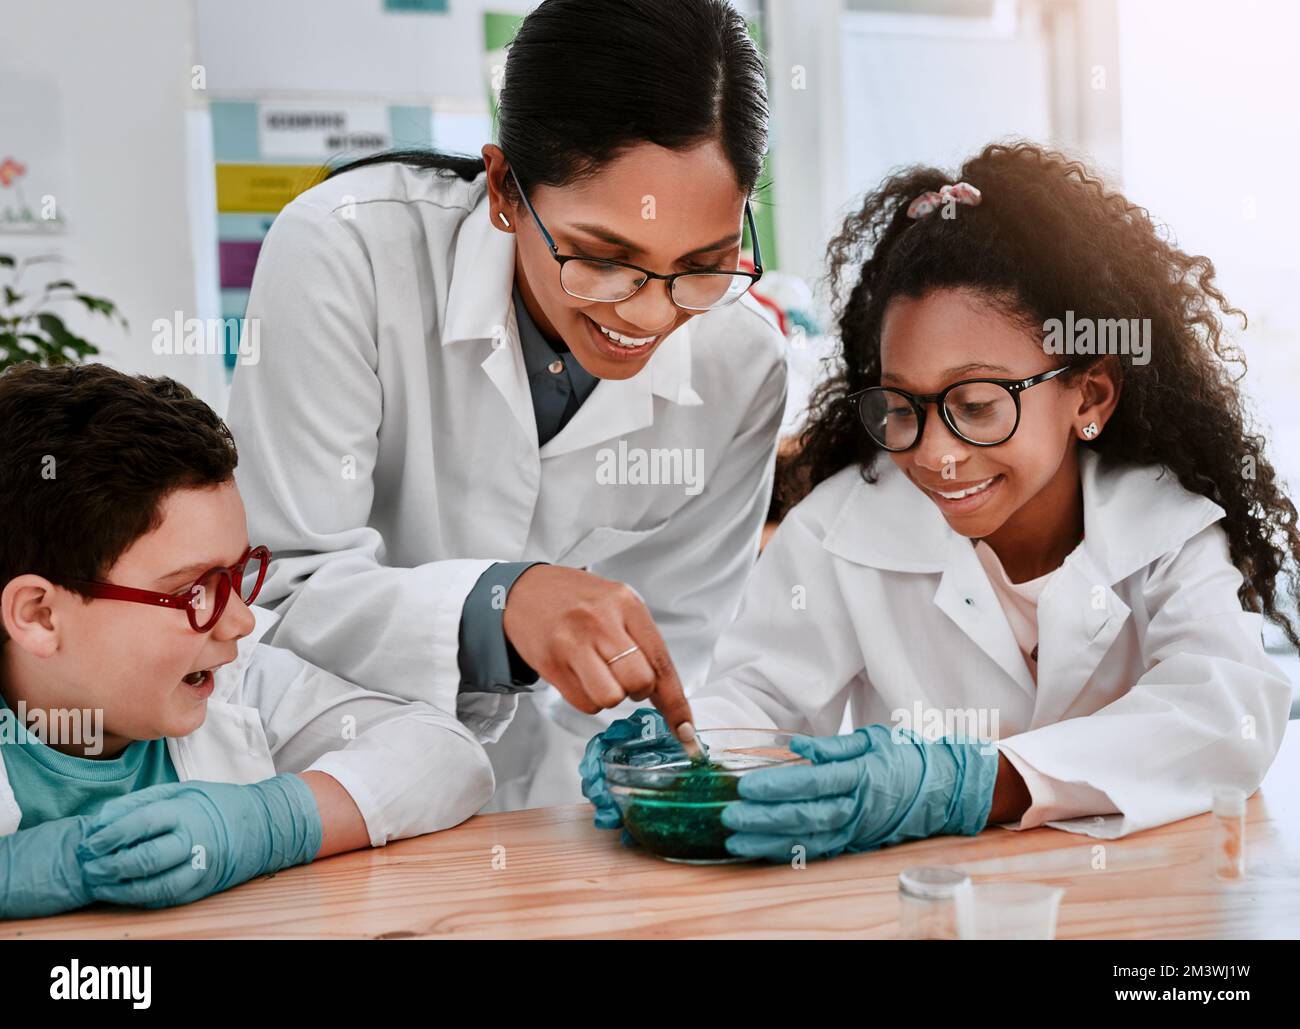 La scienza è il nostro tipo di magia. due adorabili giovani allievi della scuola sperimentano e fanno il lime con il loro insegnante di scienza a scuola. Foto Stock